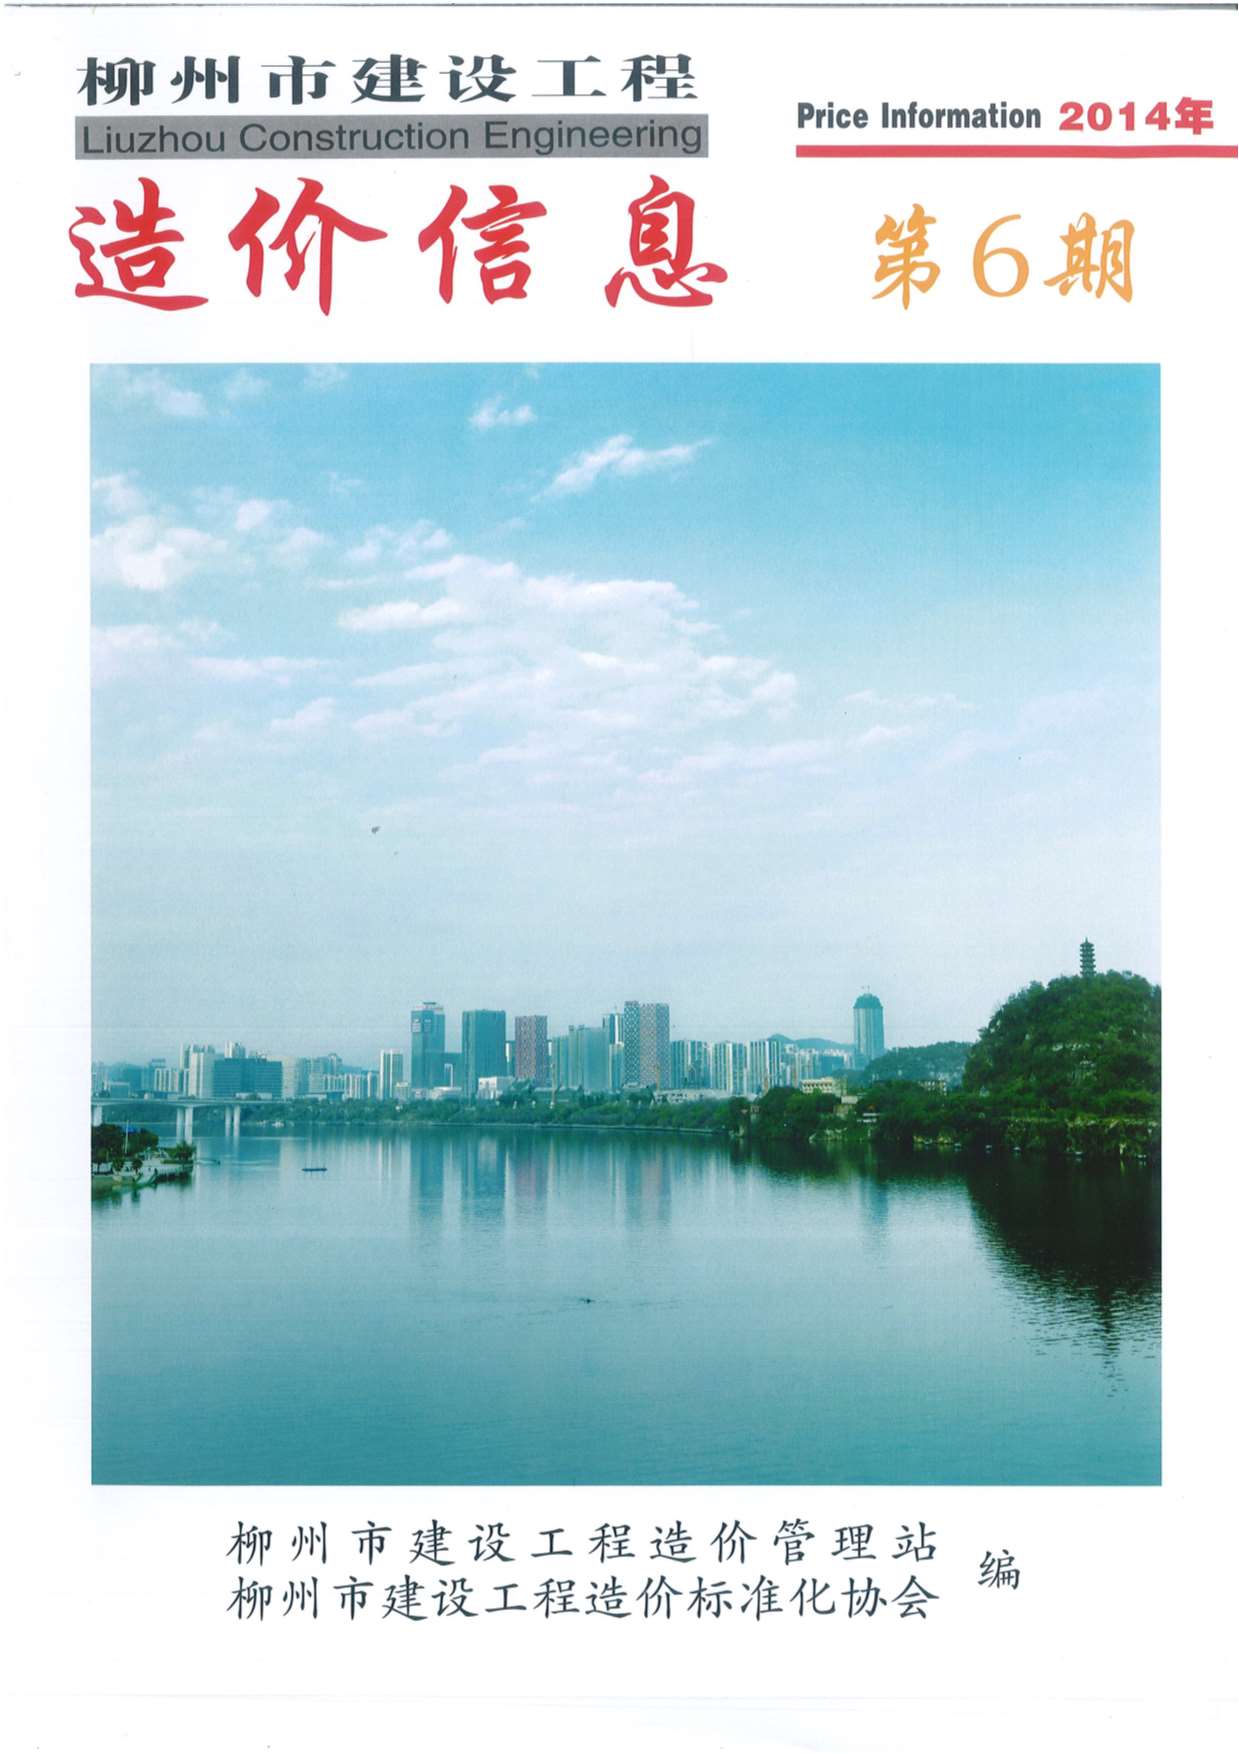 柳州市2014年6月信息价造价库信息价